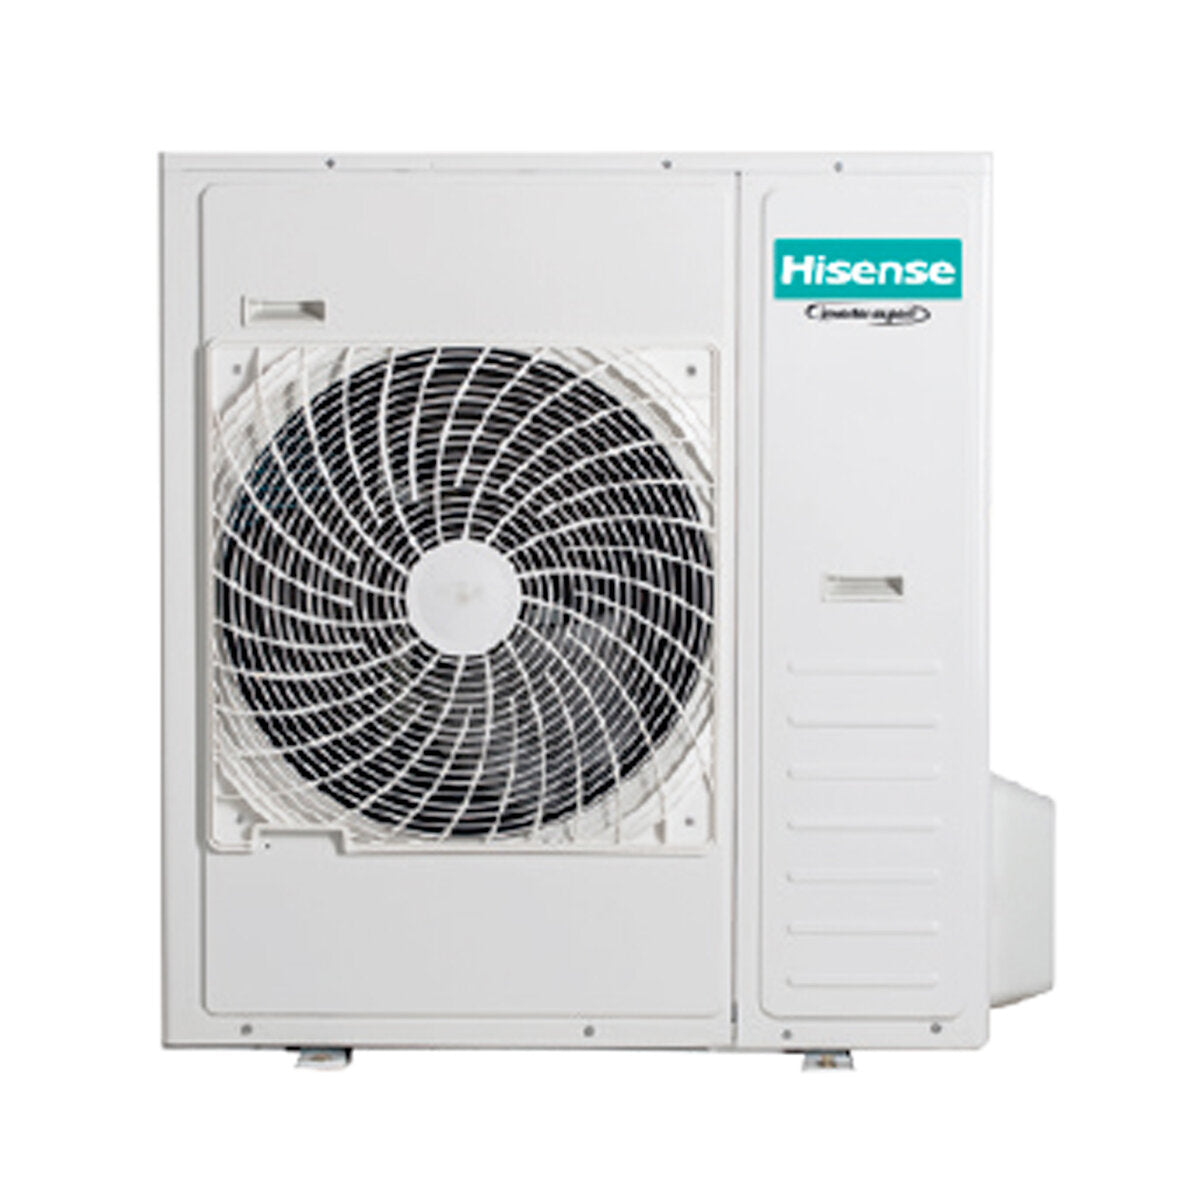 Hisense Hi-Comfort trial climatiseur split 9000 + 9000 + 24000 BTU wifi inverter unité extérieure 12,5 kW